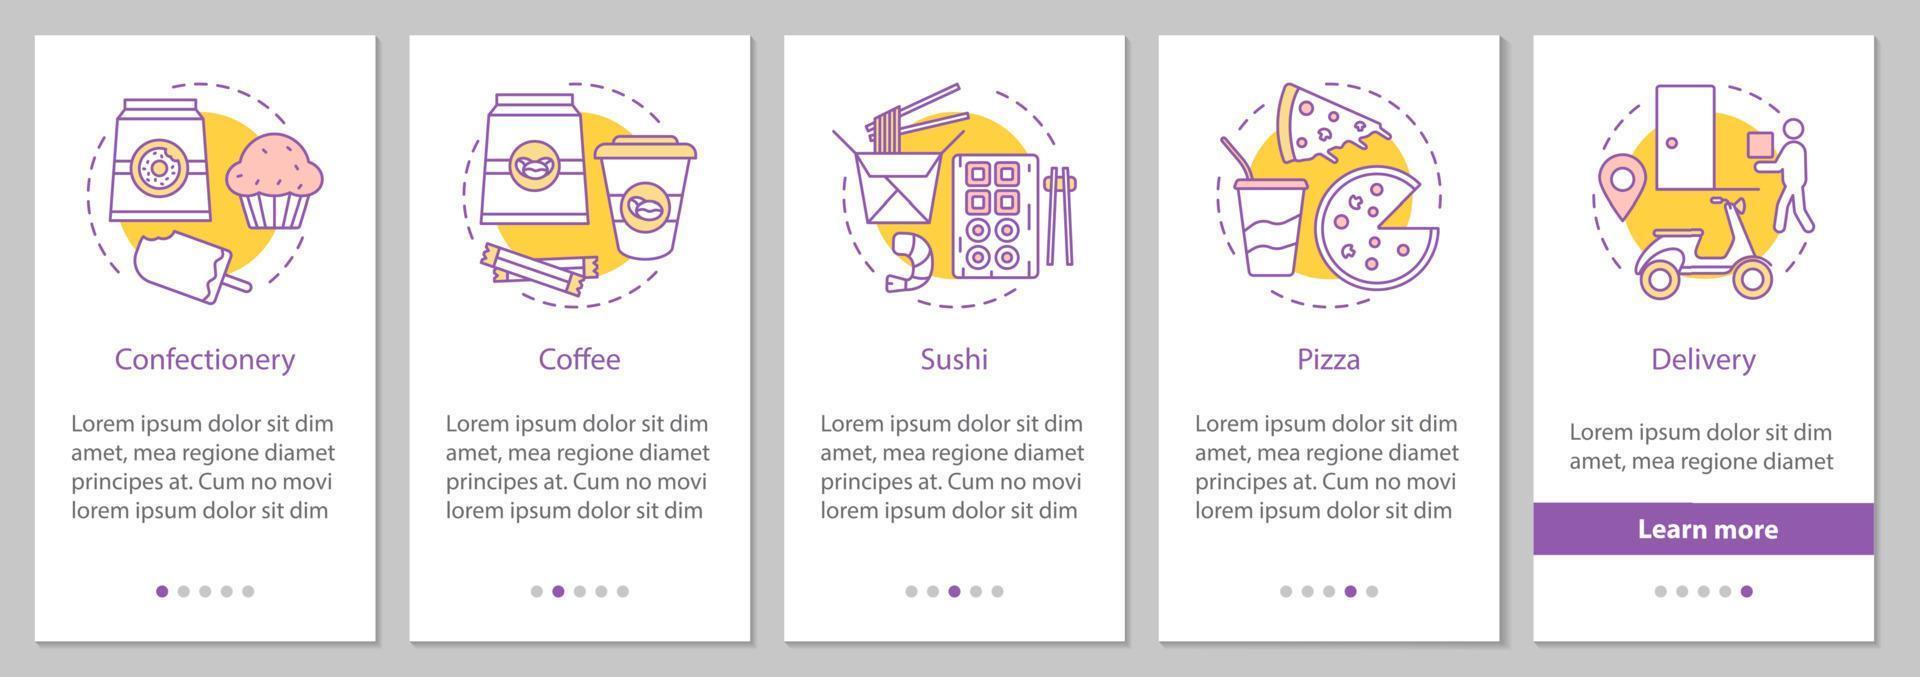 pantalla de la página de la aplicación móvil de incorporación de entrega de alimentos con conceptos lineales. confitería, café, sushi, instrucciones gráficas de pasos de pizza. ux, ui, plantilla de vector de interfaz gráfica de usuario con ilustraciones